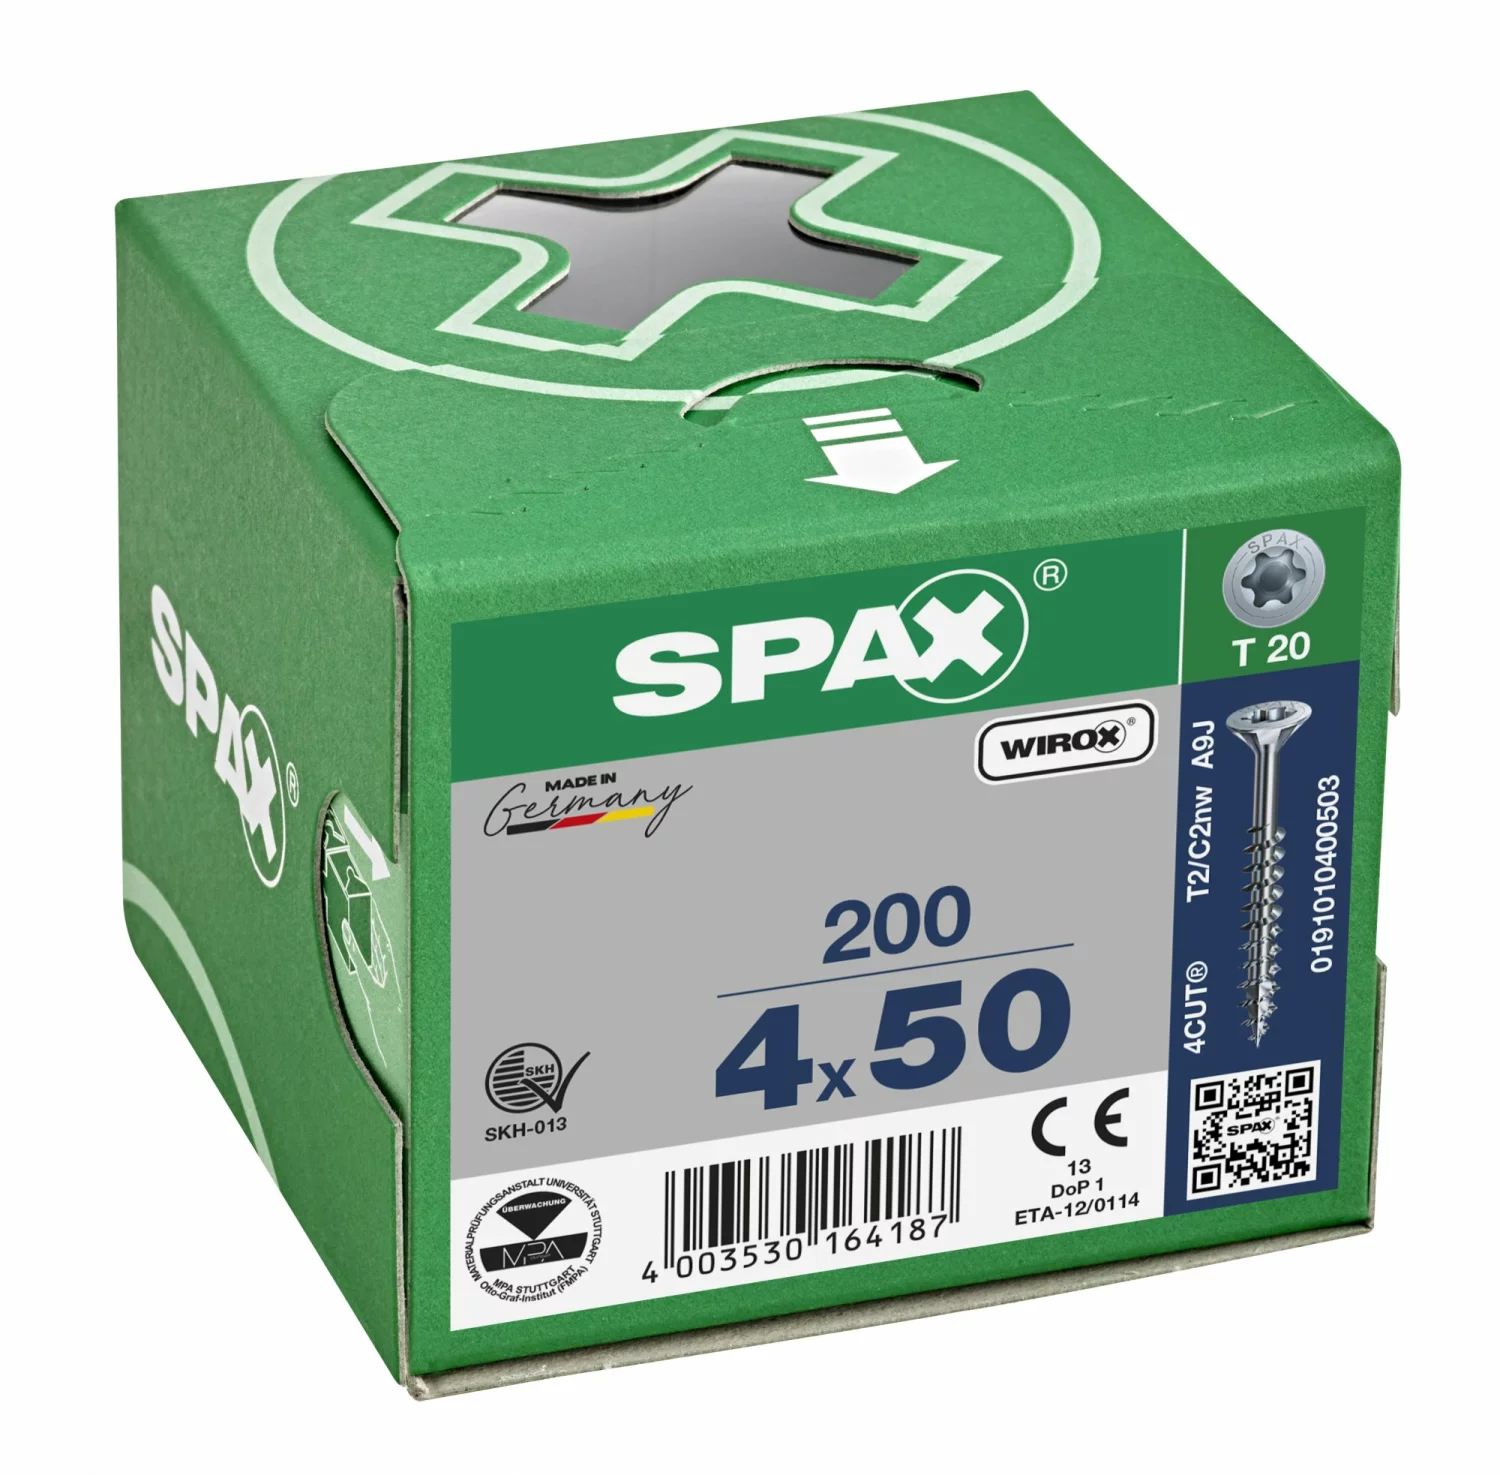 SPAX 191010400503 Universele schroef, Verzonken kop, 4 x 50, Deeldraad, T-STAR plus TX20 - WIROX - 200 stuks